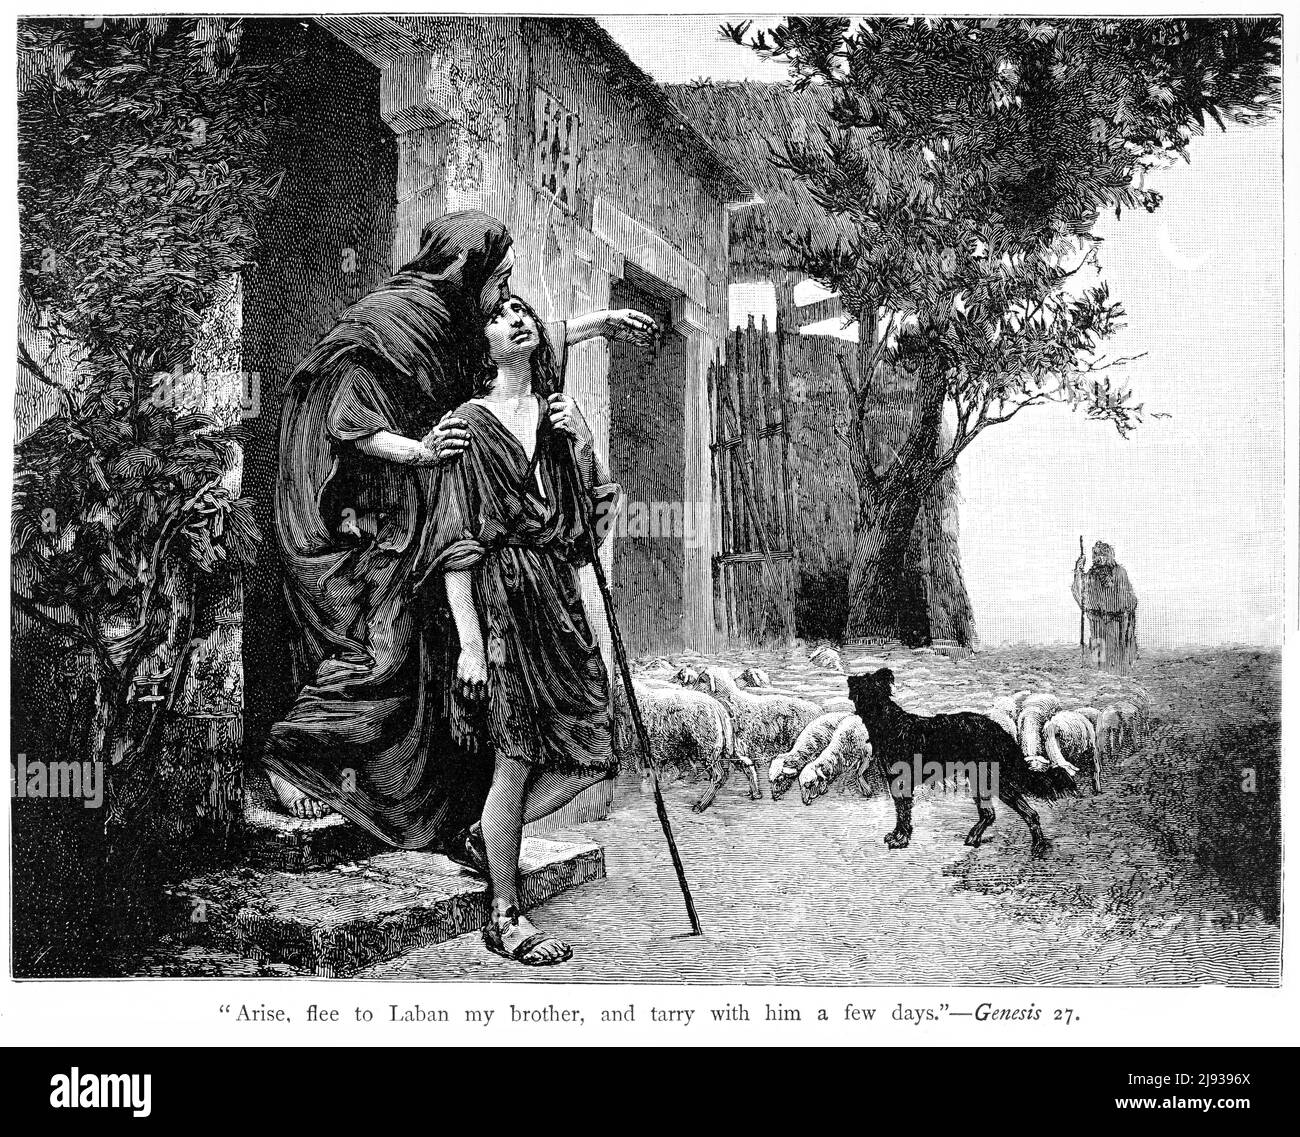 Stich von Rebecca, die Jakob aufriet, zu ihrem Bruder Laban zu fliehen, nachdem sie Isaak getäuscht und Esau den Segen gestohlen hatte Stockfoto